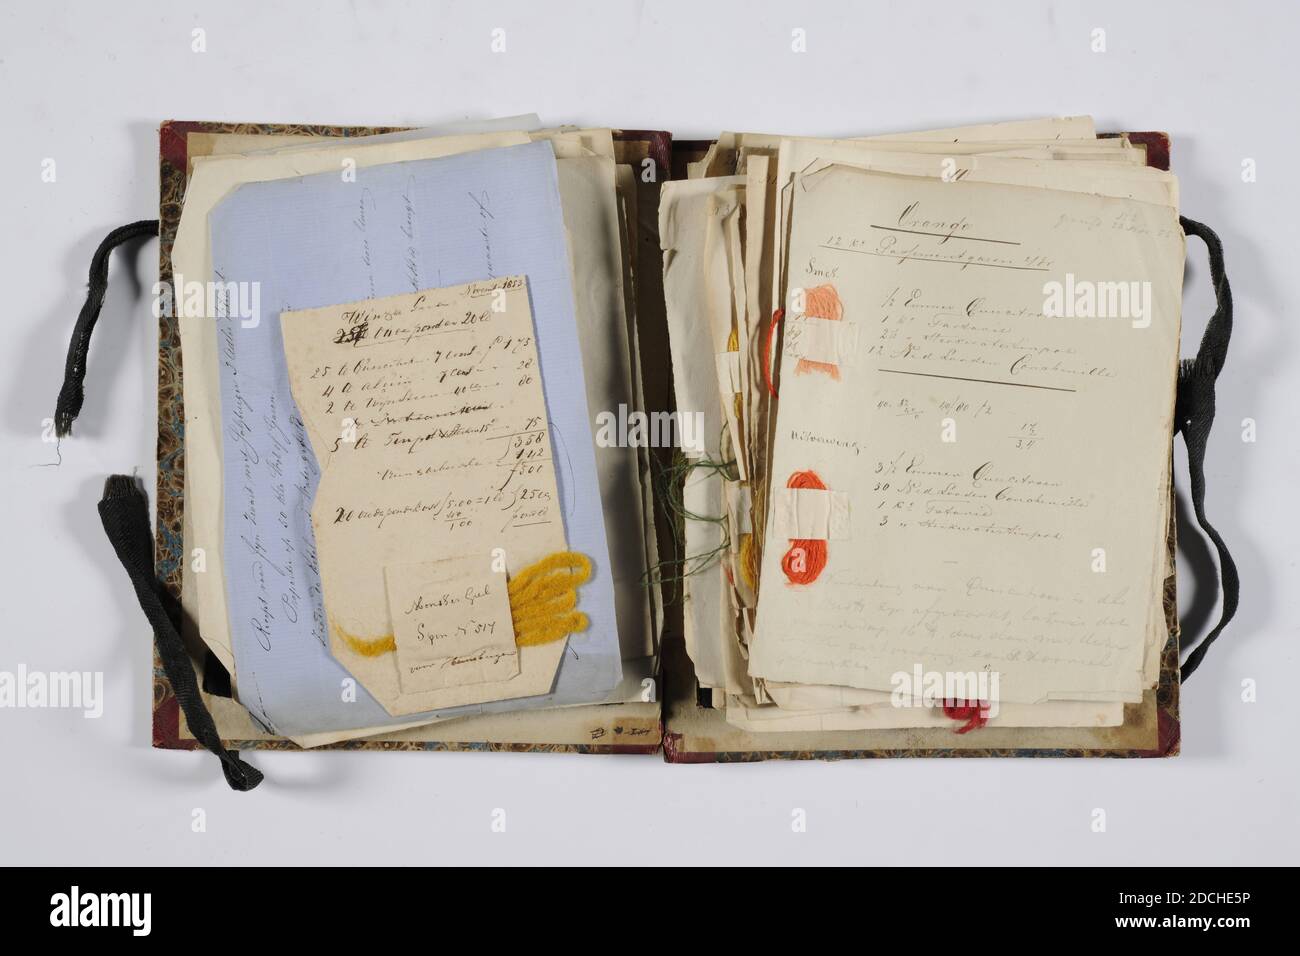 Musterbuch, Firma Zaalberg, Mai 1849-Mai 1850, Papier, Tinte, Karton, Wolle, Allgemein: 20.7 x 17 x 3,2cm (207 x 170 x 32mm), Rezeptbuch mit Wollproben der Firma Zaalberg in Leiden. Das Buch, das gebunden ist, enthält einen einfarbigen Stoffeinband. Der Innenraum besteht aus vier Abschnitten, von denen ein Teil pro Folio nummeriert ist, mit Proben von gefärbtem Wollgarn, mit den Farbrezepten darauf geschrieben. Die Proben, falls vorhanden, werden mit einem geklebten Papierstreifen befestigt. Das erste in dem Buch erwähnte Datum ist der 1849. Mai, das letzte Datum ist der 1850. Mai 1984 Stockfoto